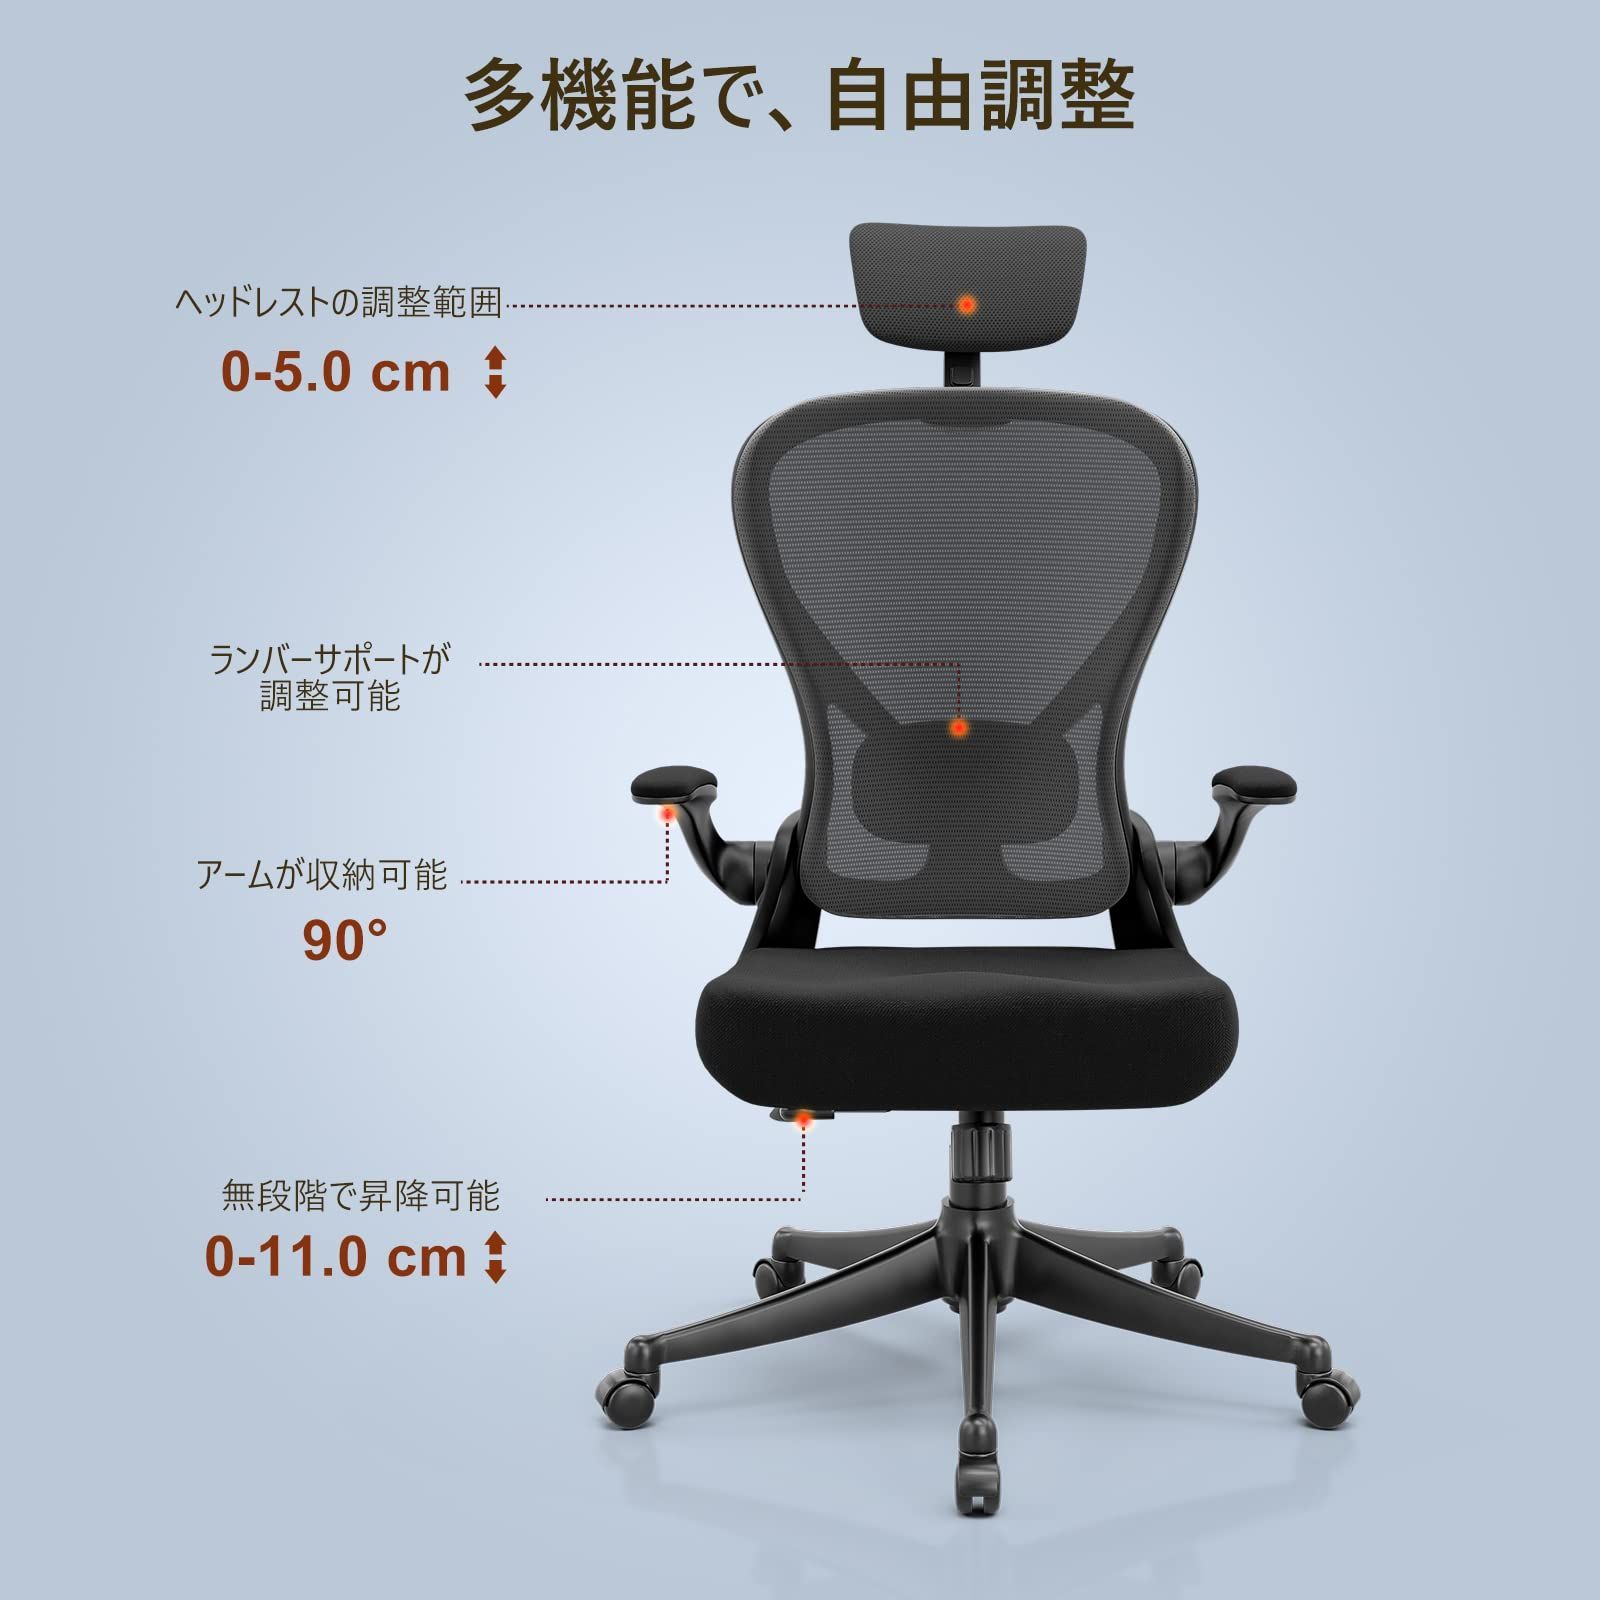 Frylr フィスチェア デスクチェア 人間工学 椅子 360度回転 135度